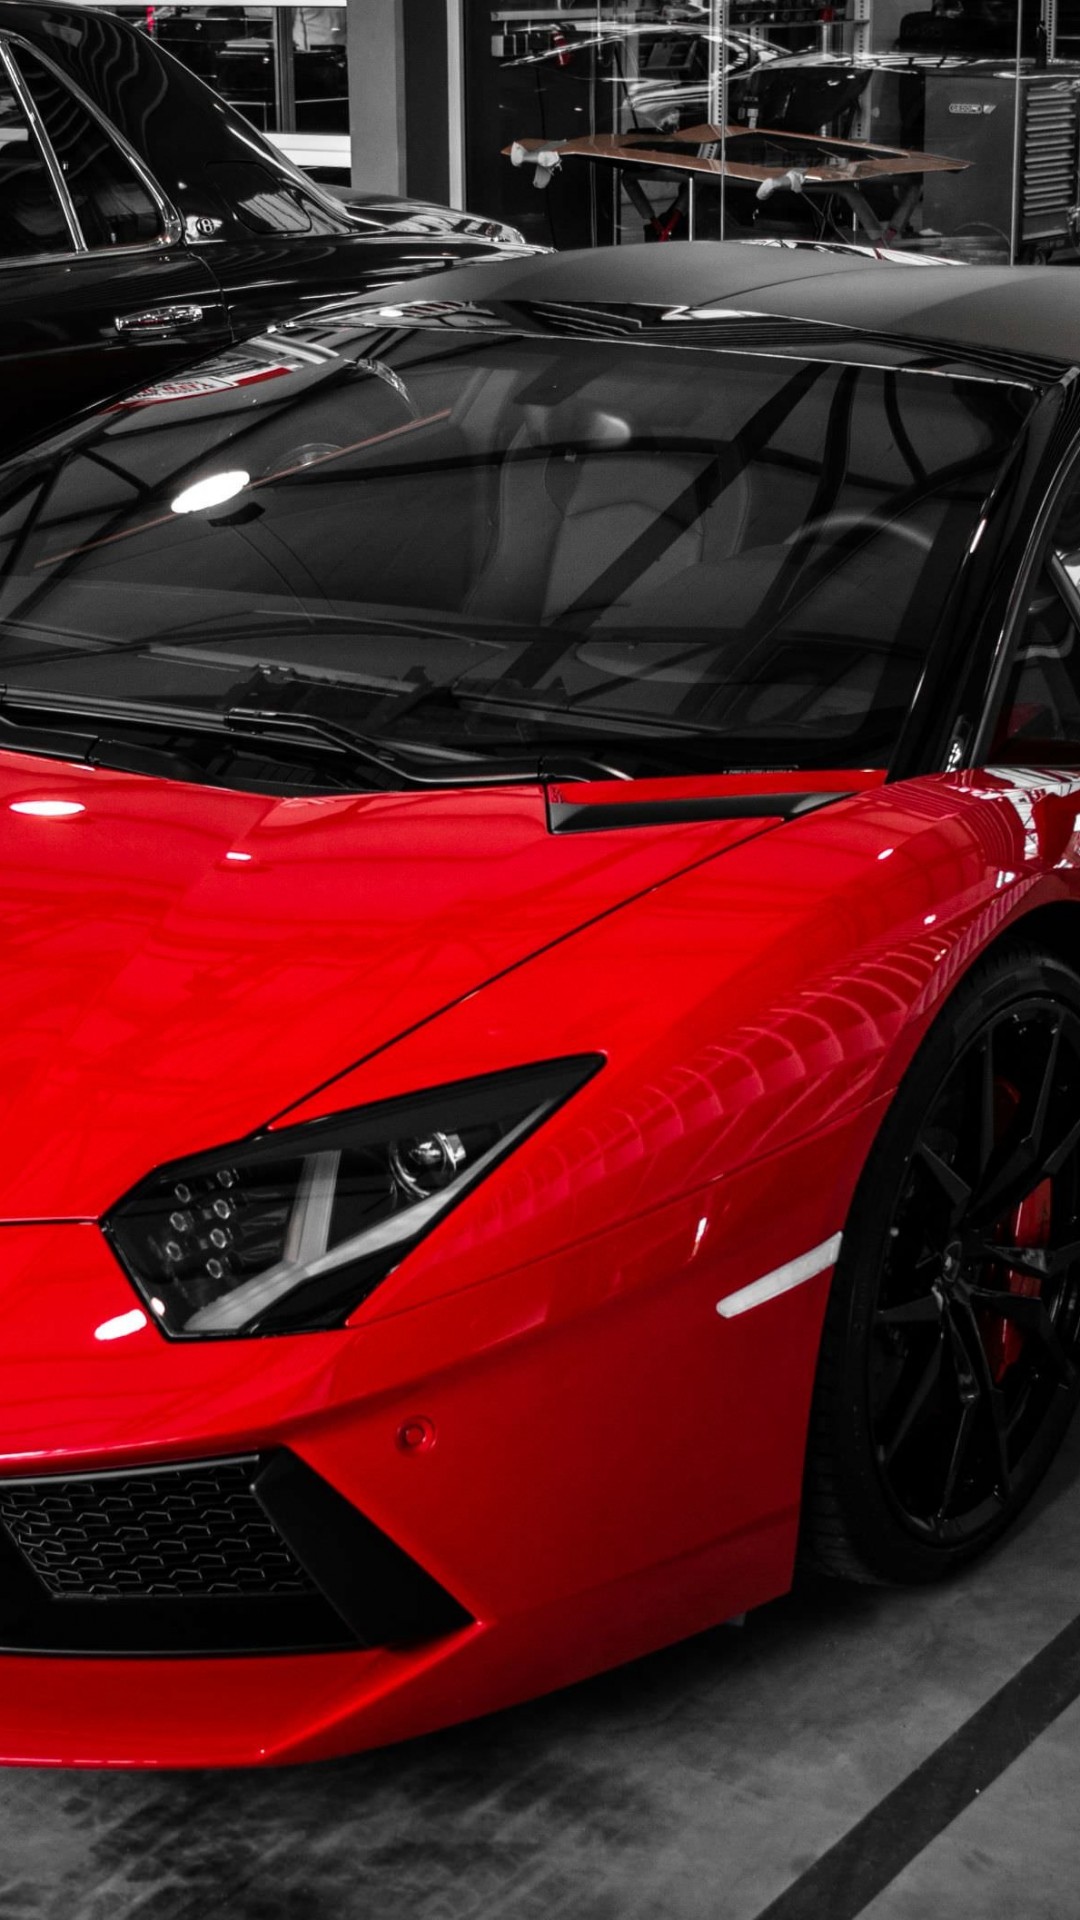 Red Lamborghini Aventador Wallpaper for SONY Xperia Z1